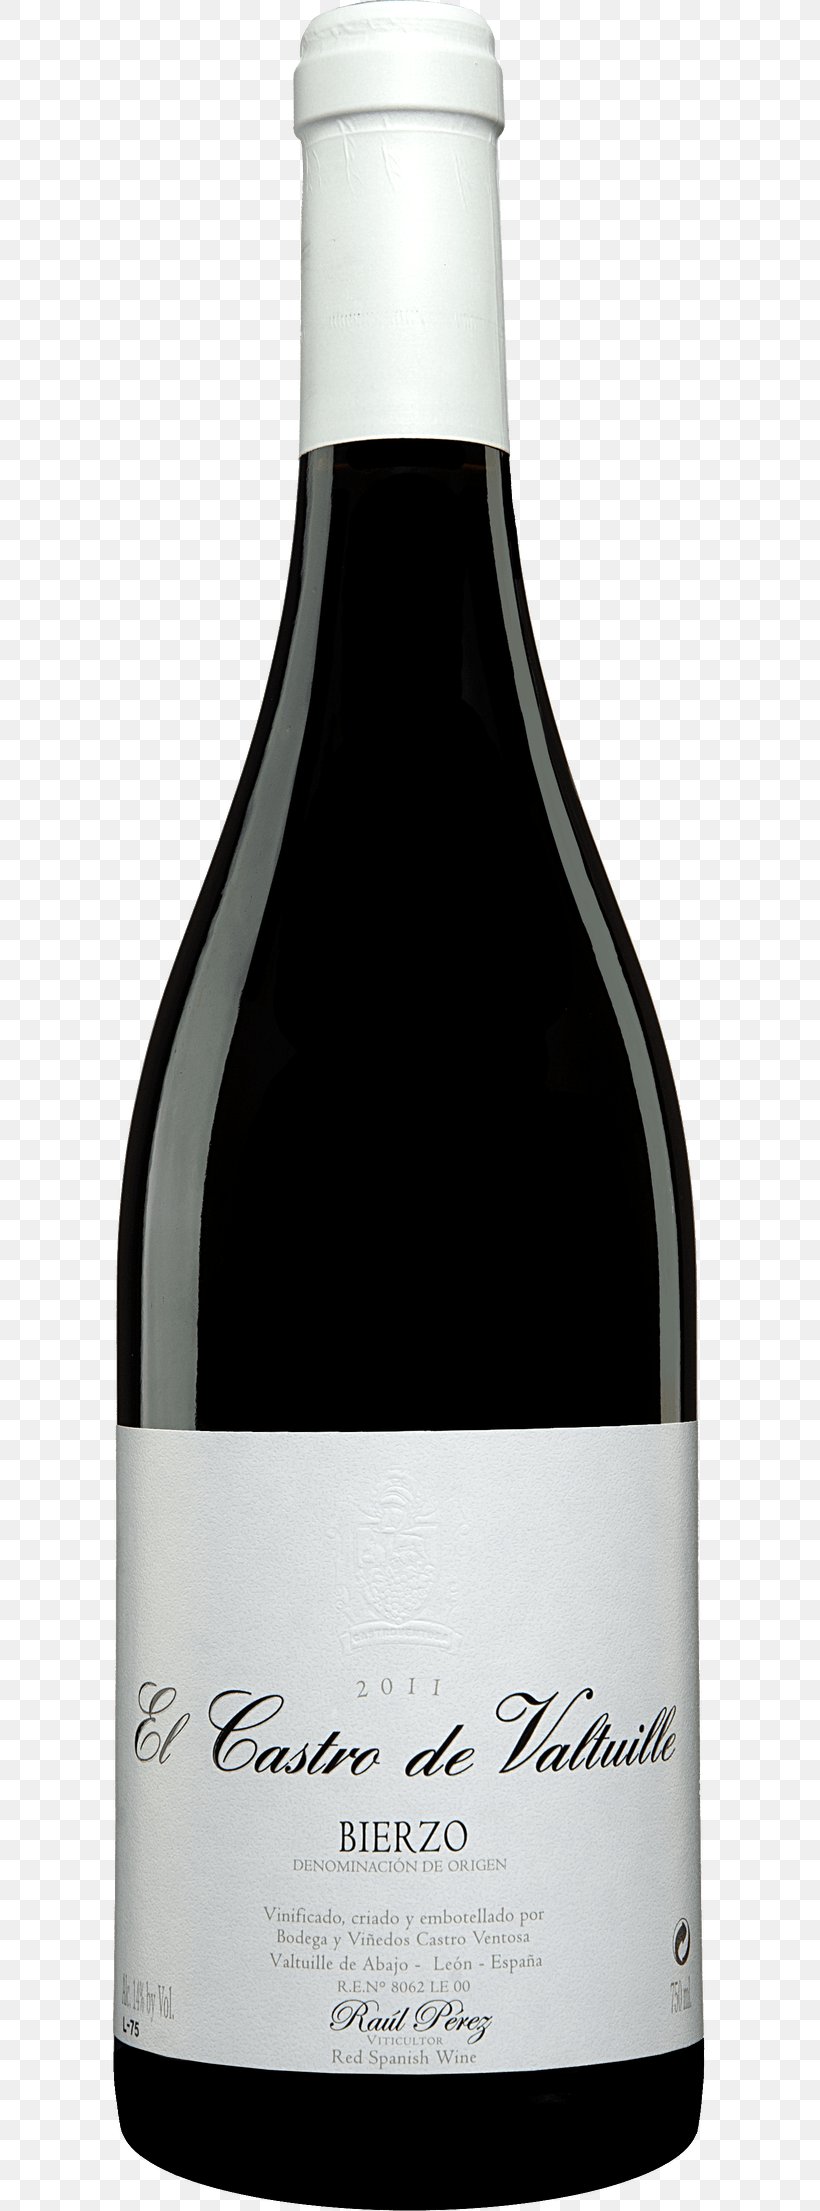 Pinot Noir Red Wine Shiraz Cabernet Sauvignon, PNG, 602x2211px, Pinot Noir, Alcoholic Beverage, Bottle, Cabernet Sauvignon, Common Grape Vine Download Free